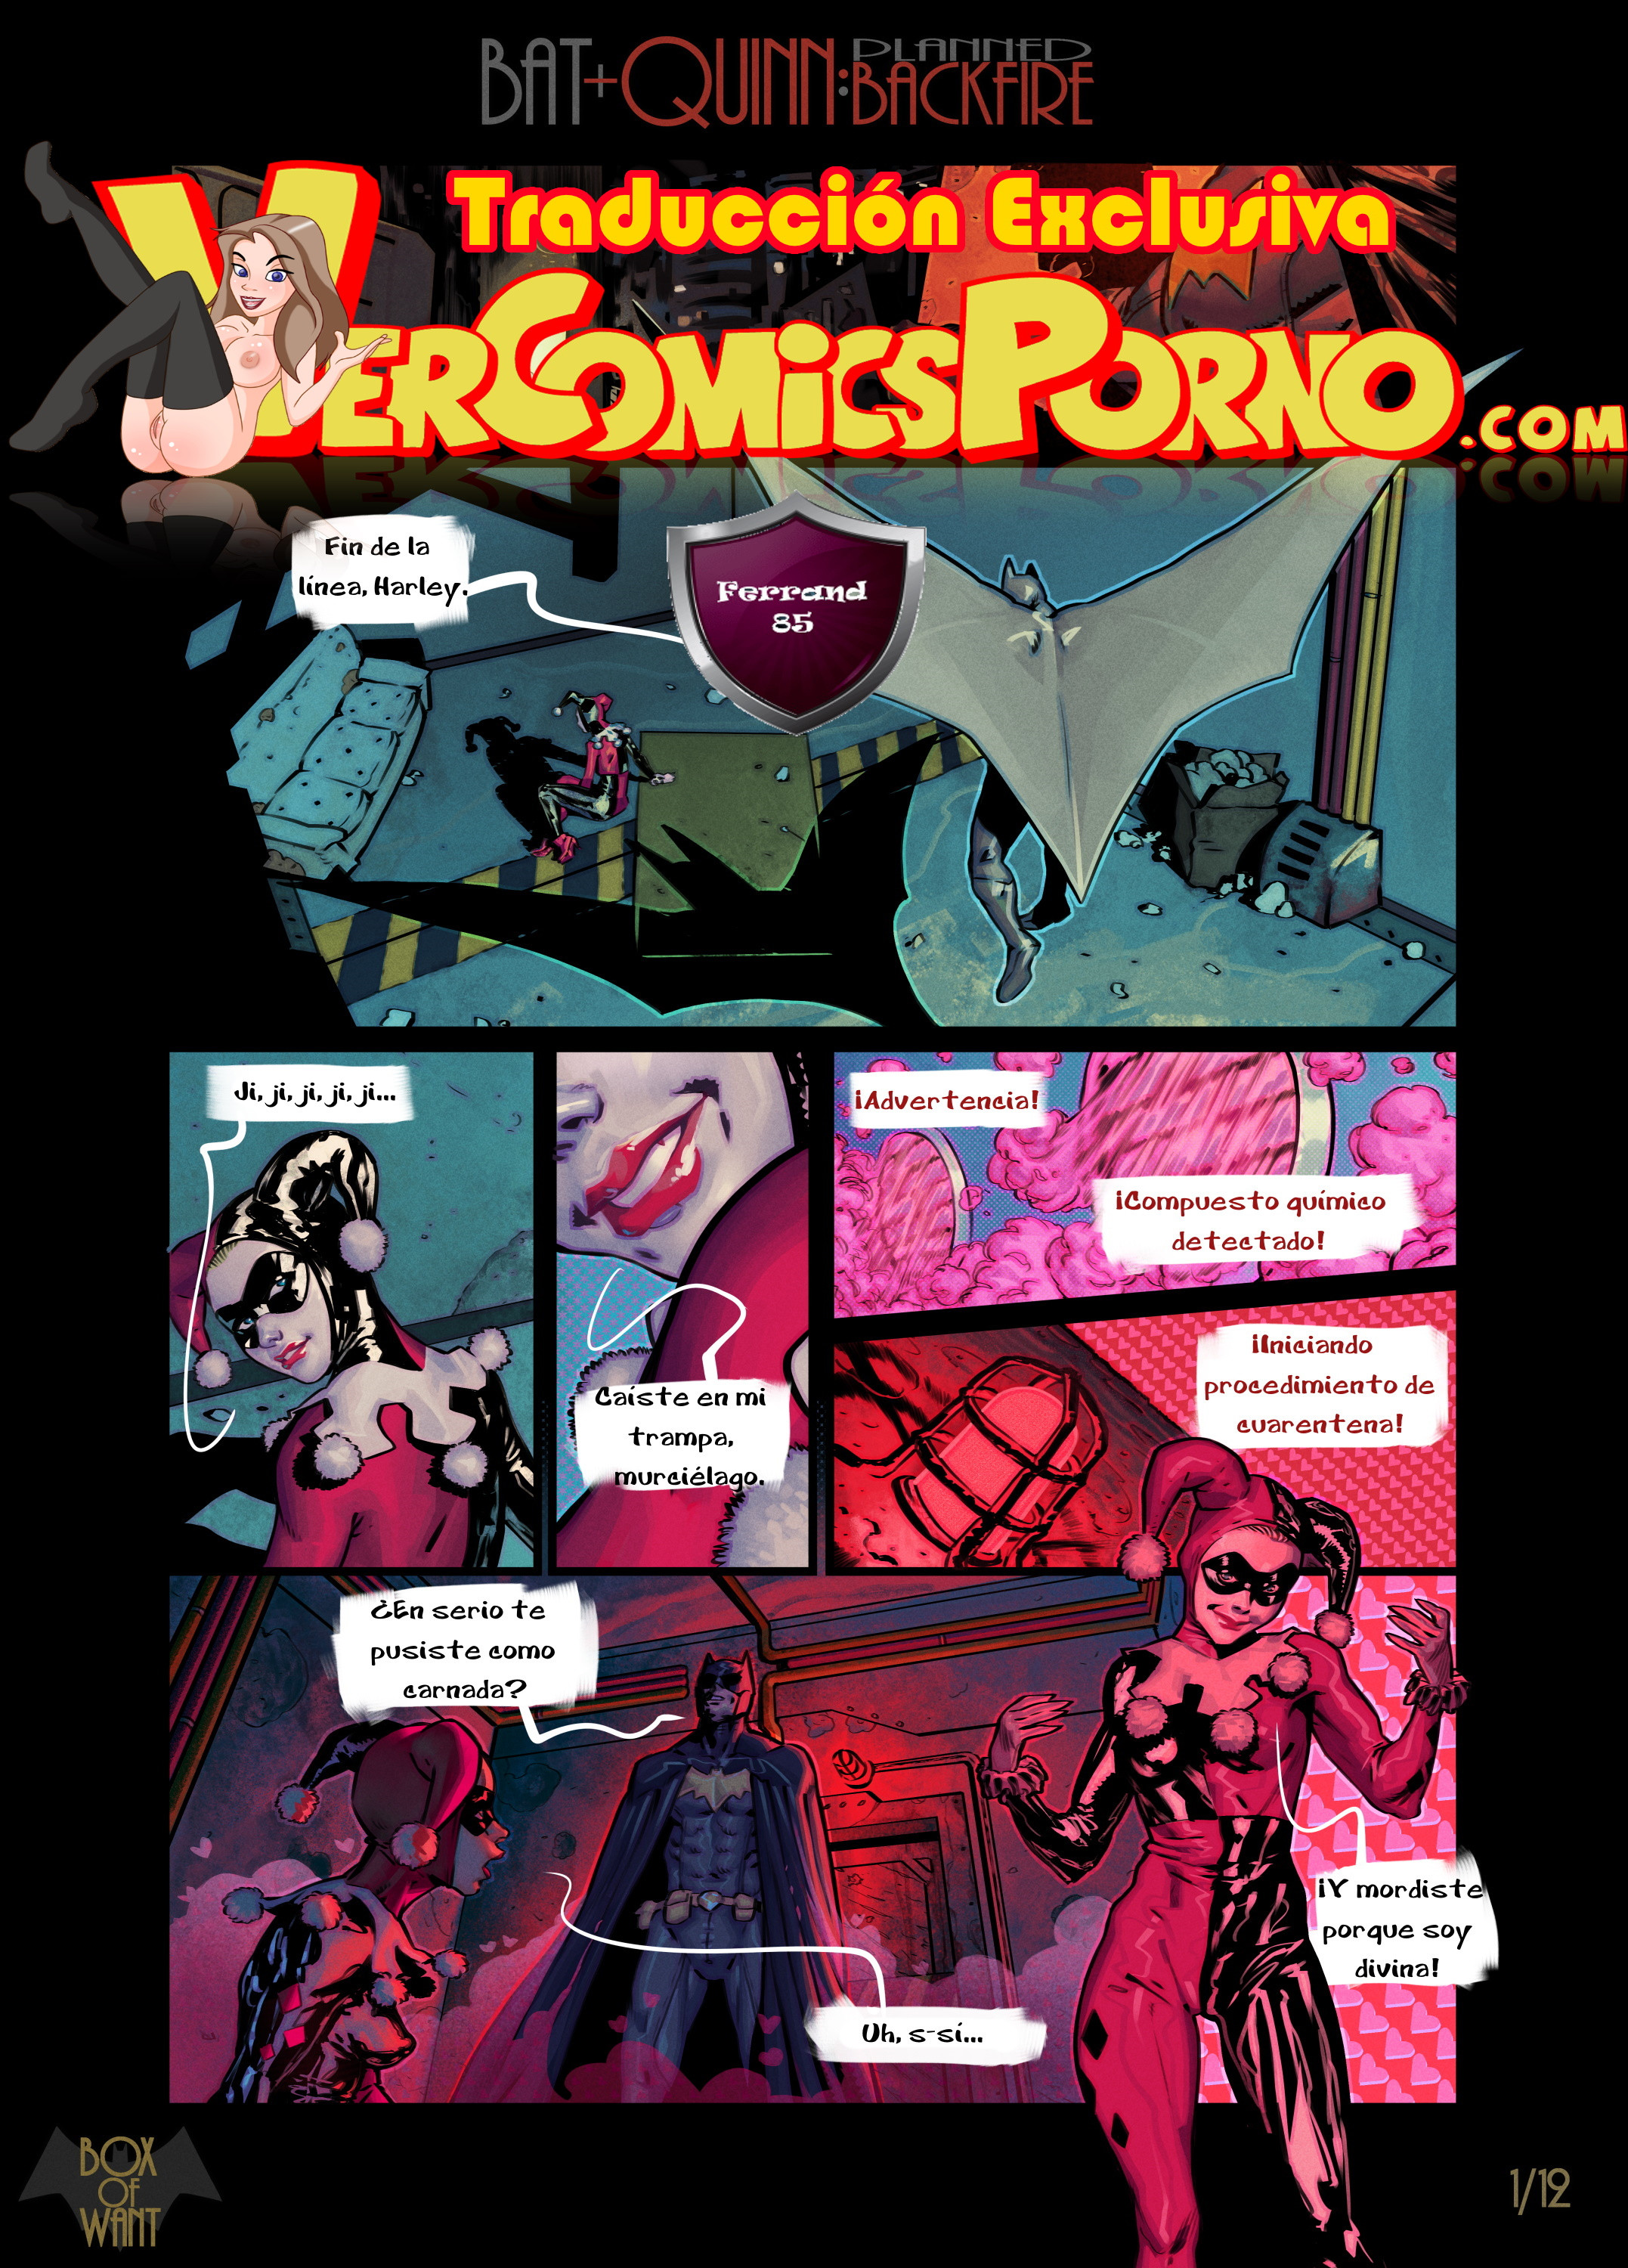 Cartoon Harley Quinn Hentai - Batman y Harley Quinn: Fantasias de una noche - Vercomicsporno